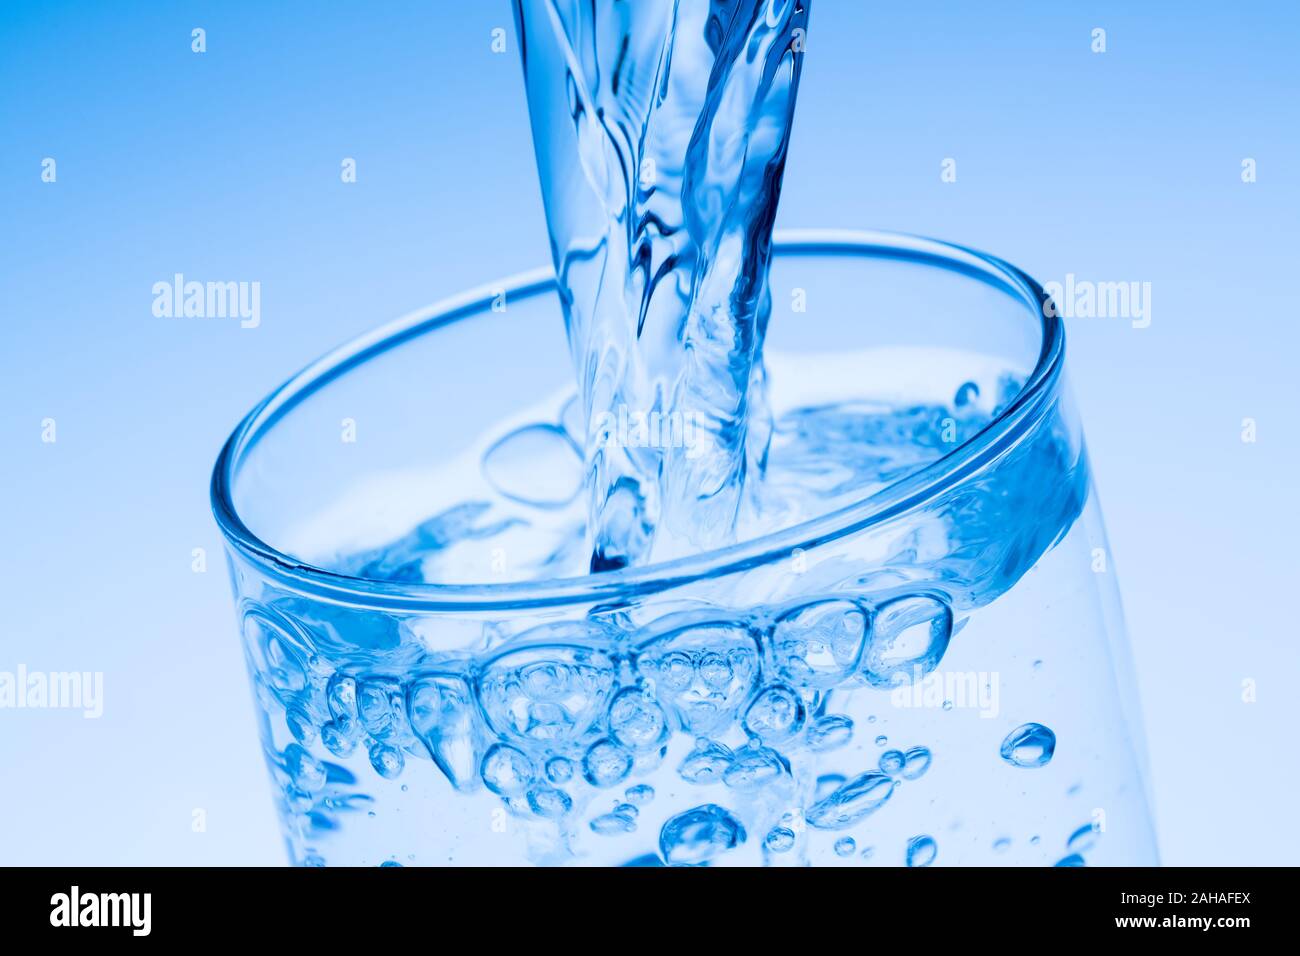 Ein  Glas mit Wasser vor weissem Hintergrund, Symbolfoto für Trinkwasser, Wasserbedarf und Verbrauch, Glas, Stock Photo